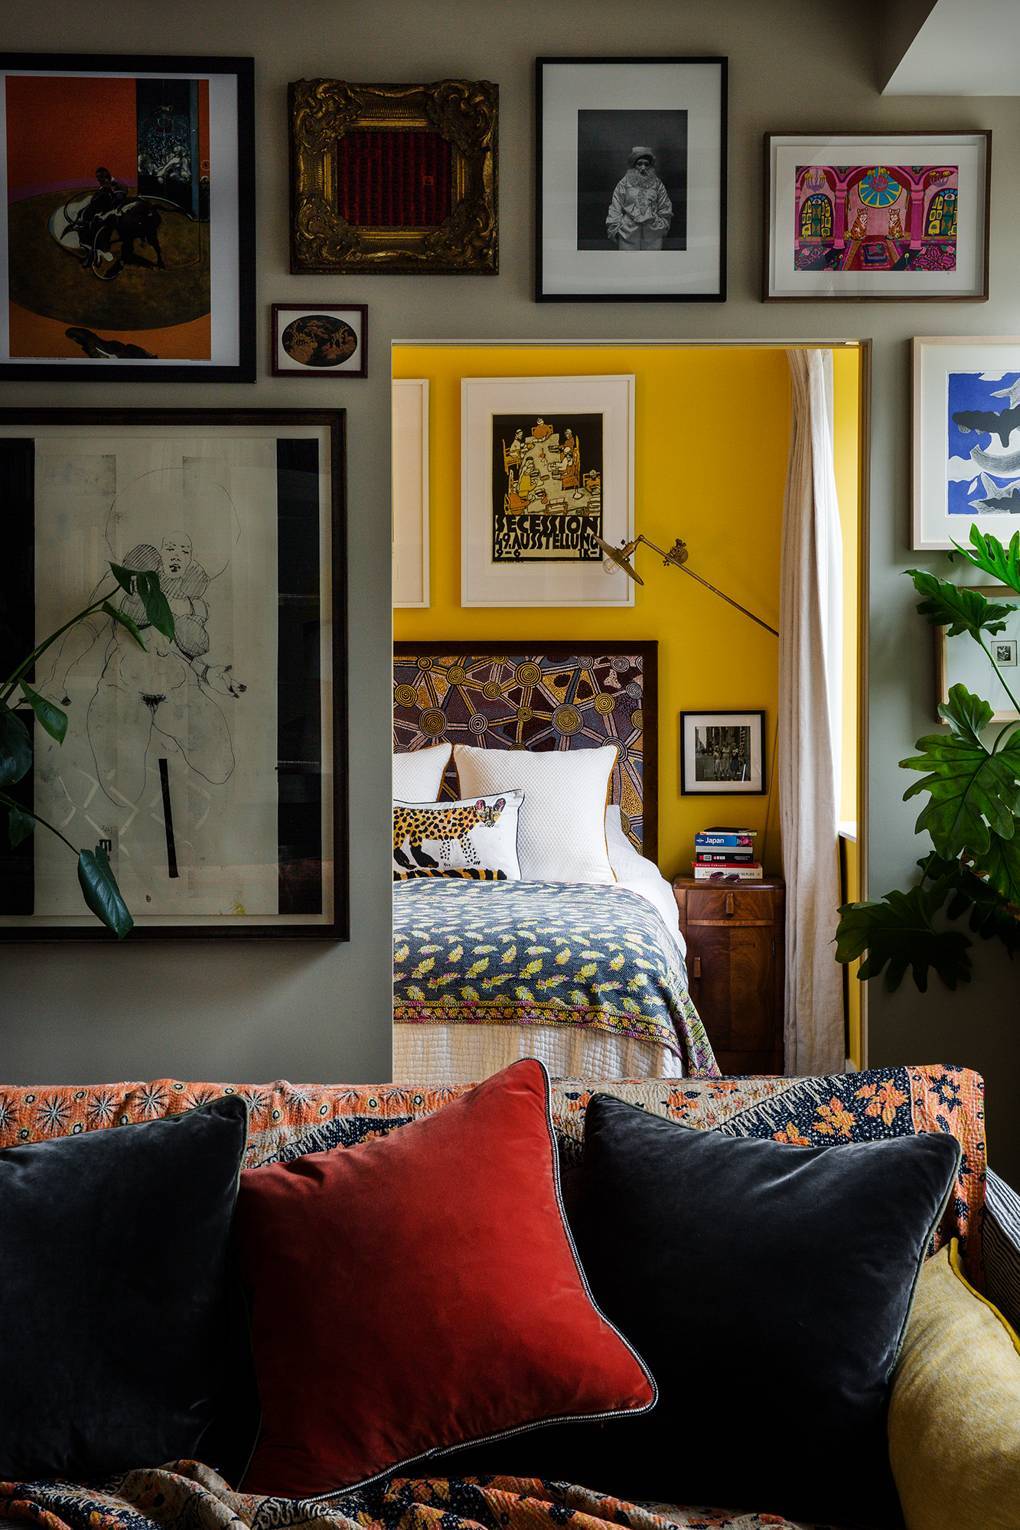  Widok z salonu do sypialni: żółta ściana pomalowana farbą Farrow&Ball w kolorze „Babouche”, poduszka z autorskim printem artystki Machiko oraz zagłowie łóżka pokryte tkaniną Pierre Frey. (Fot. Owen Gale dla House&Garden)
 